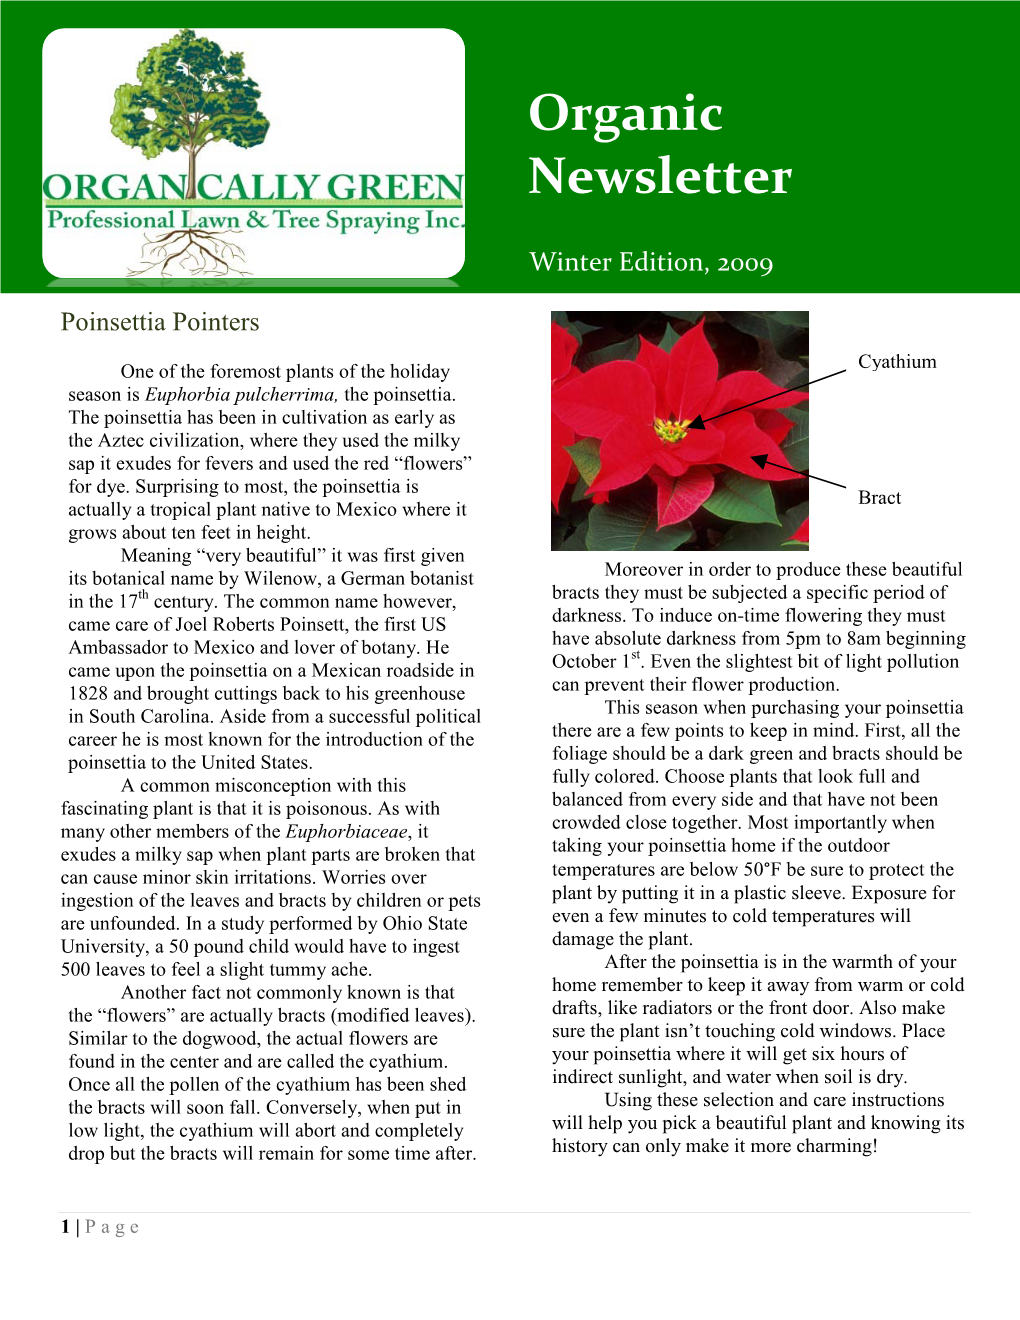 Winter Newsletter 2009